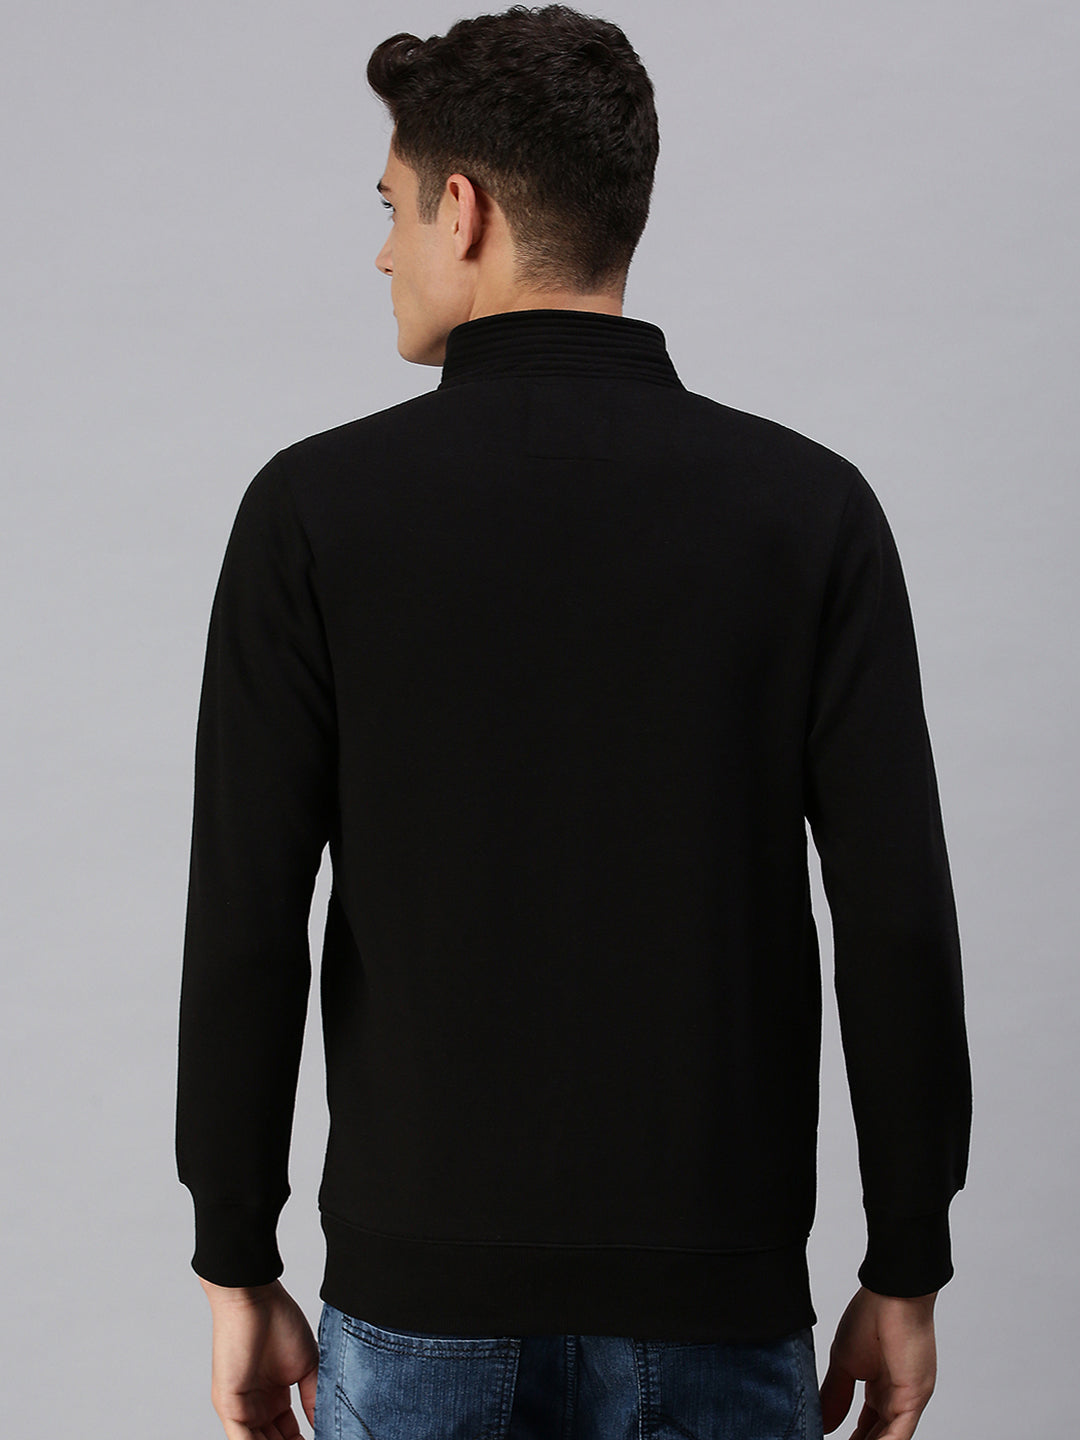 Men Round Neck Printed Black Sweatshirt